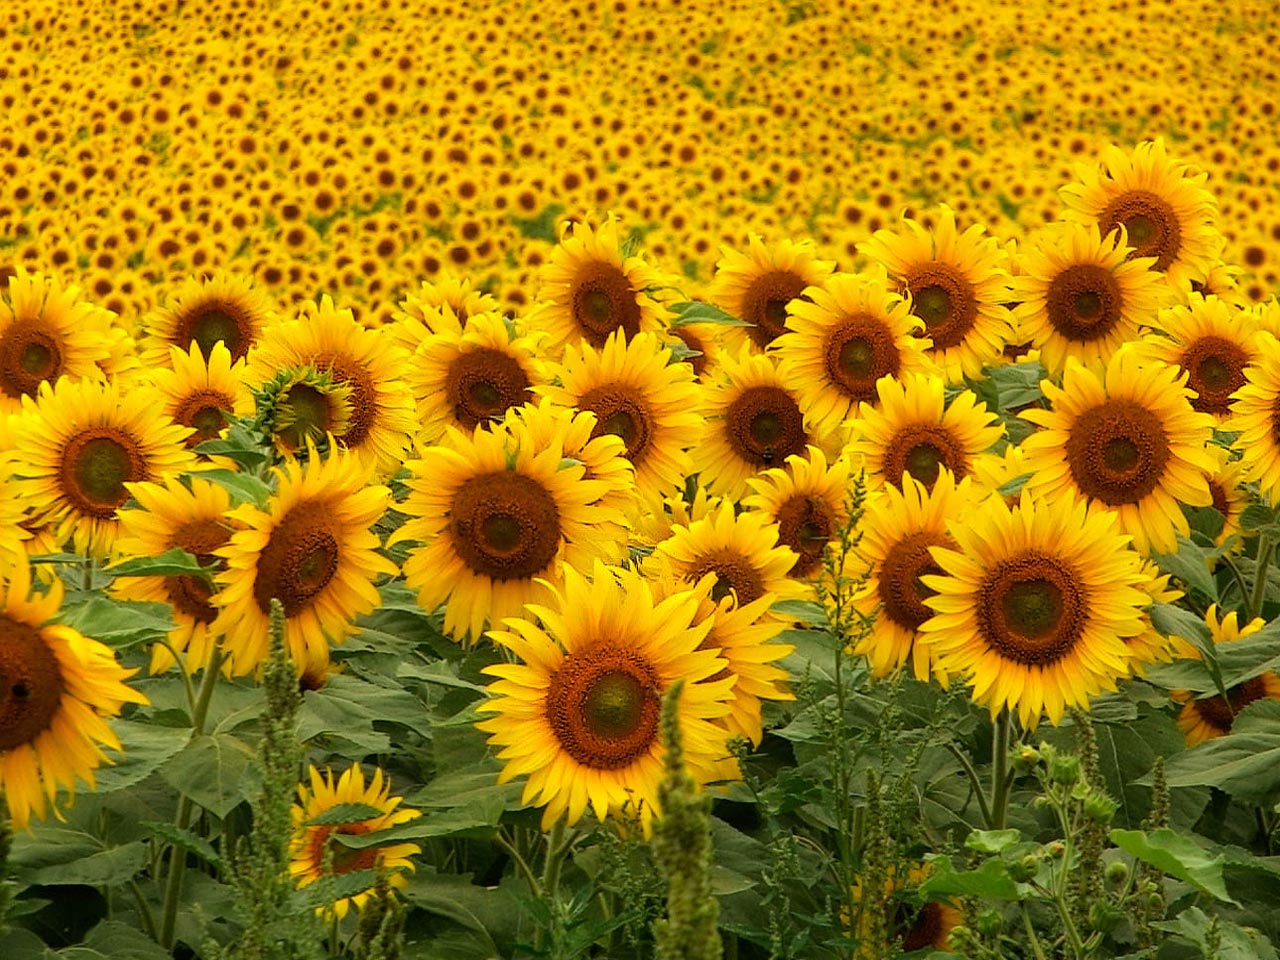 Chất lượng hình ảnh Sunflowers Wallpapers HD sẽ khiến bạn thấy ngạc nhiên và say mê. Độ sắc nét và màu sắc rực rỡ sẽ khiến cho tất cả mọi người đều bị cuốn hút bởi nó. Hãy để cho những bông hoa hướng dương đem tới niềm tin và sự tràn đầy cho cuộc sống của bạn.